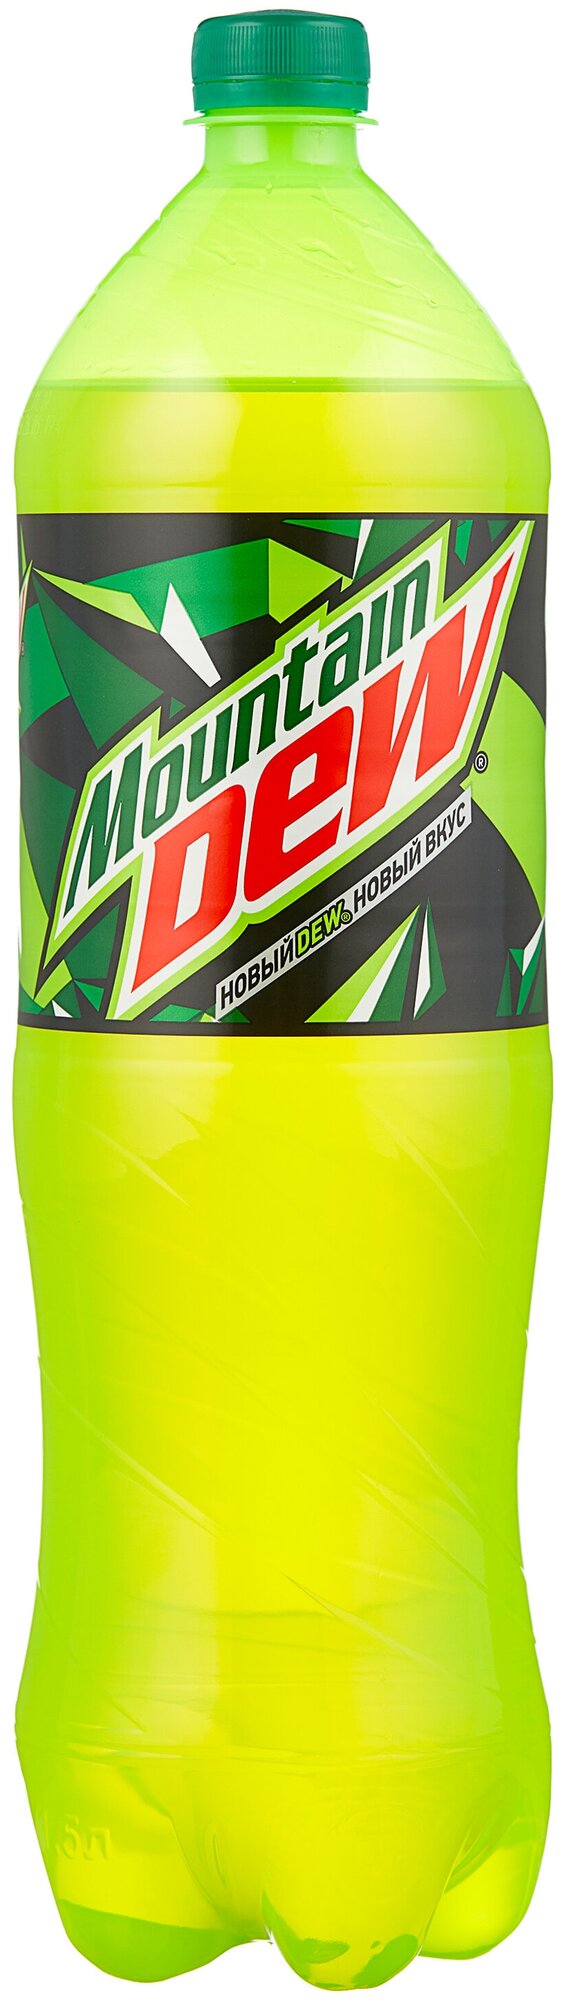 Газированный напиток Mountain Dew 1.5 л. (РФ) - 1 бутылка - фотография № 2